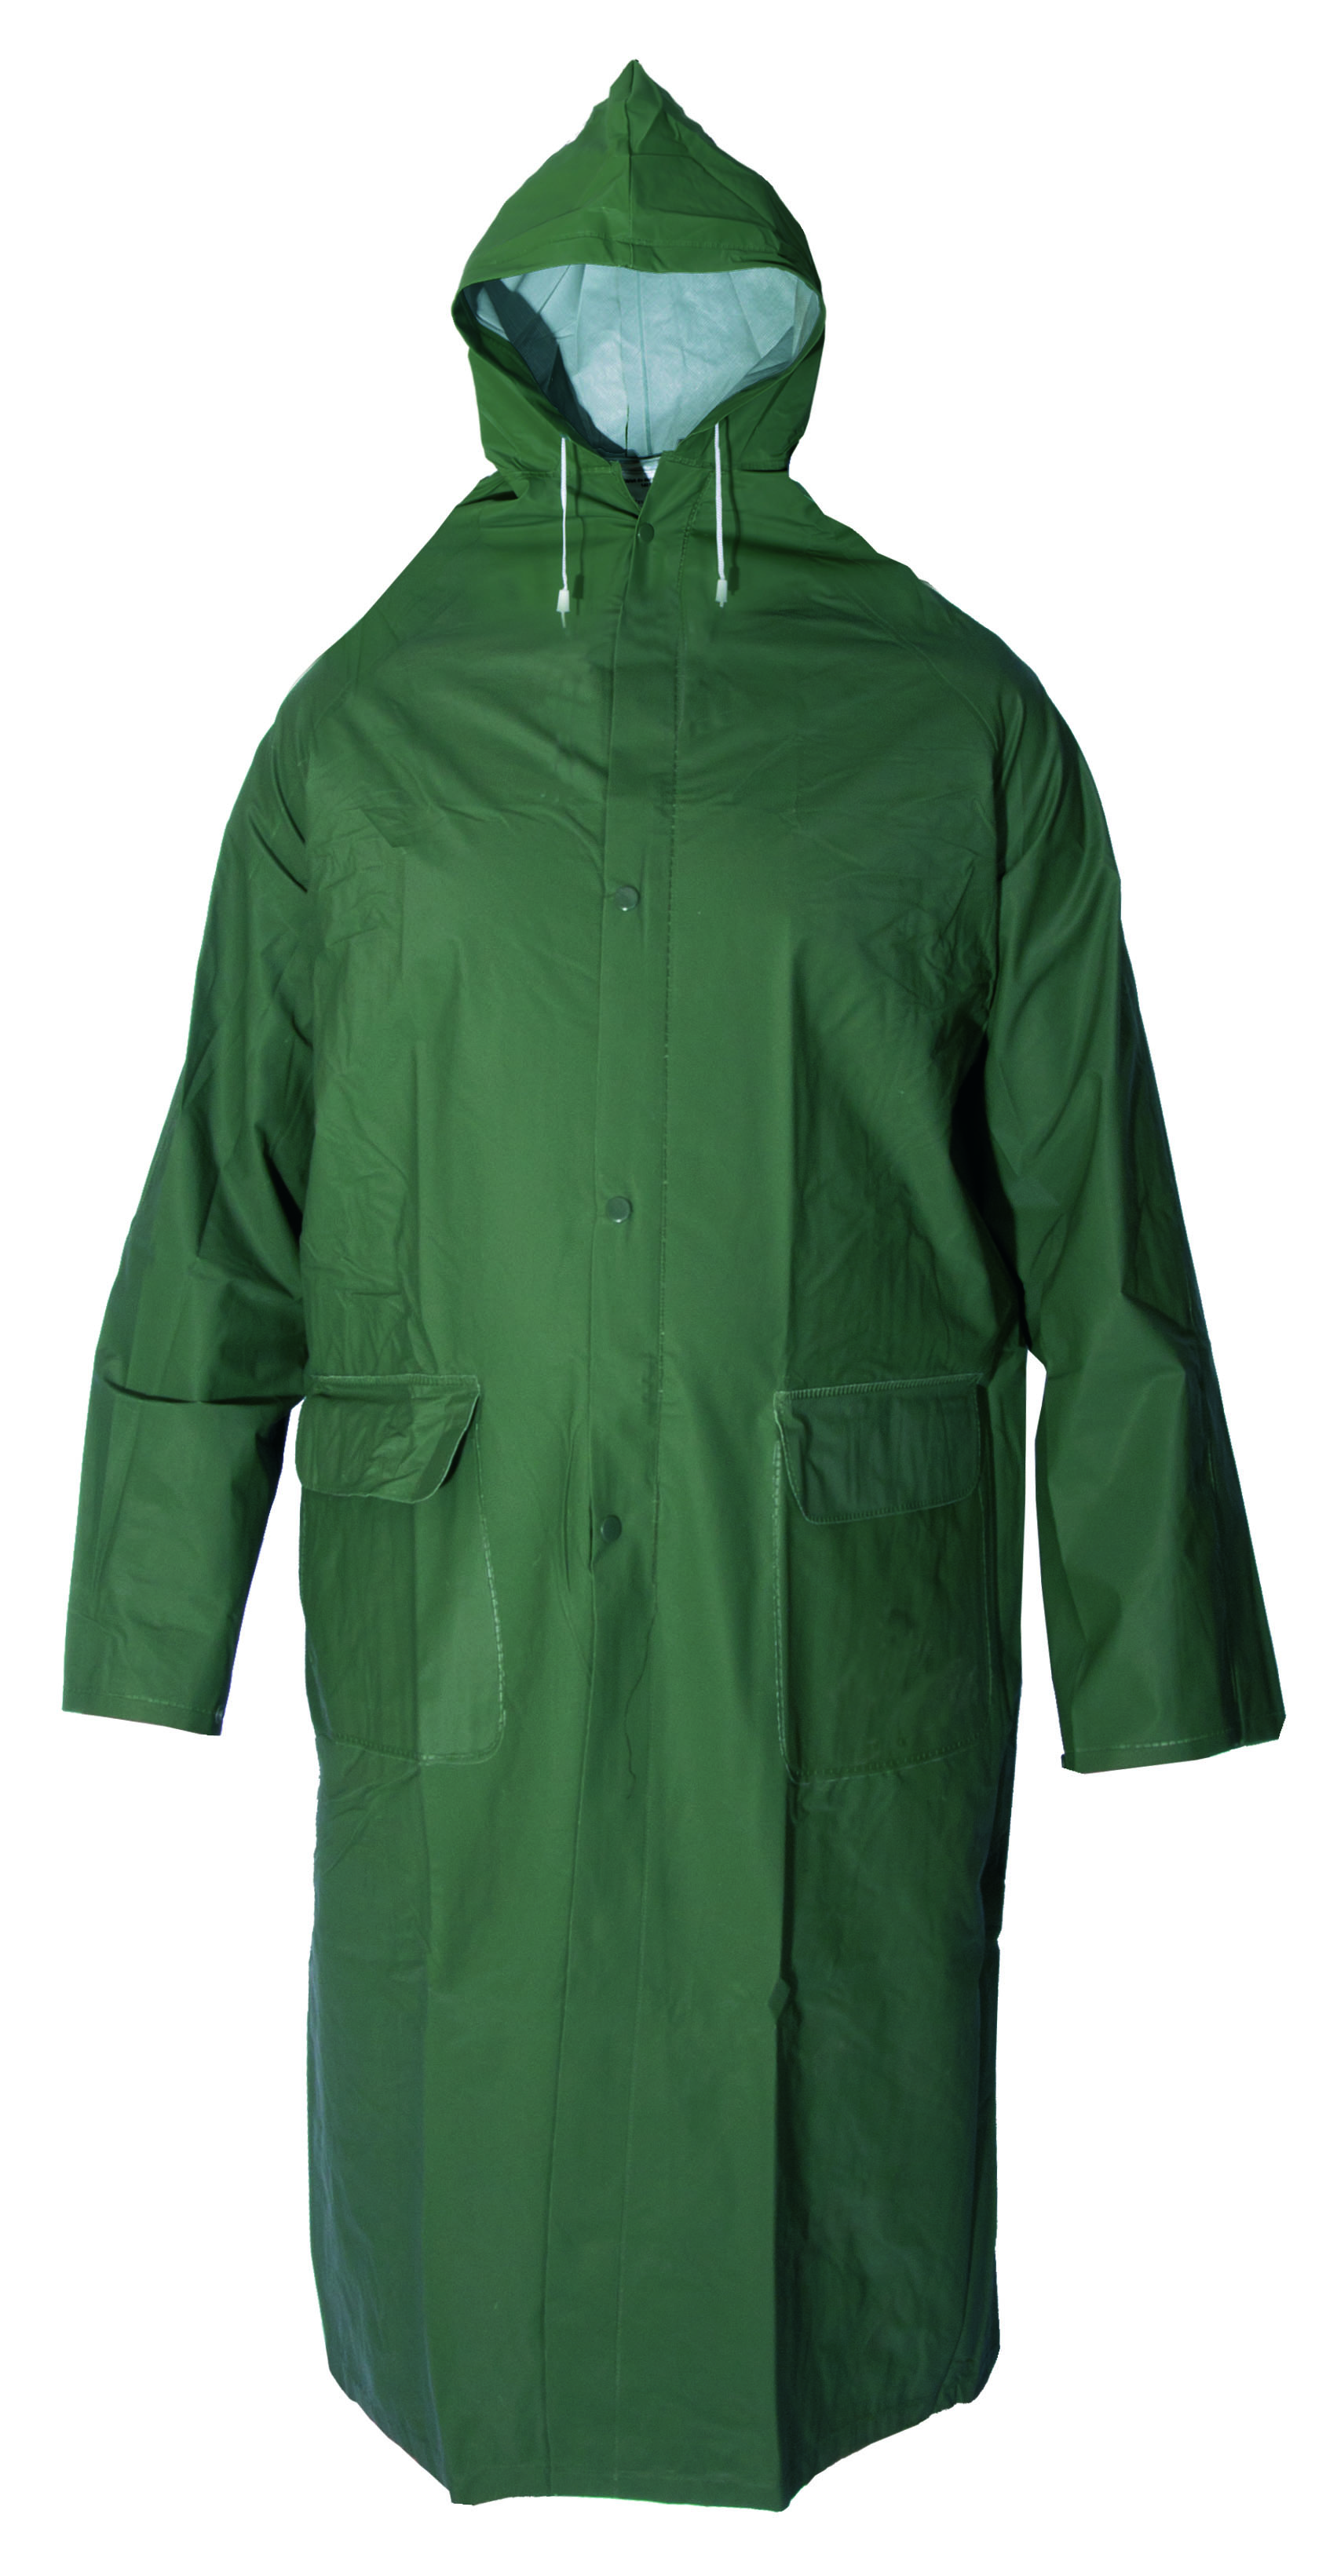 plášť do deště, s kapucí, zelený, velikost L 1.00 Kg TOP Sklad4 600245 20